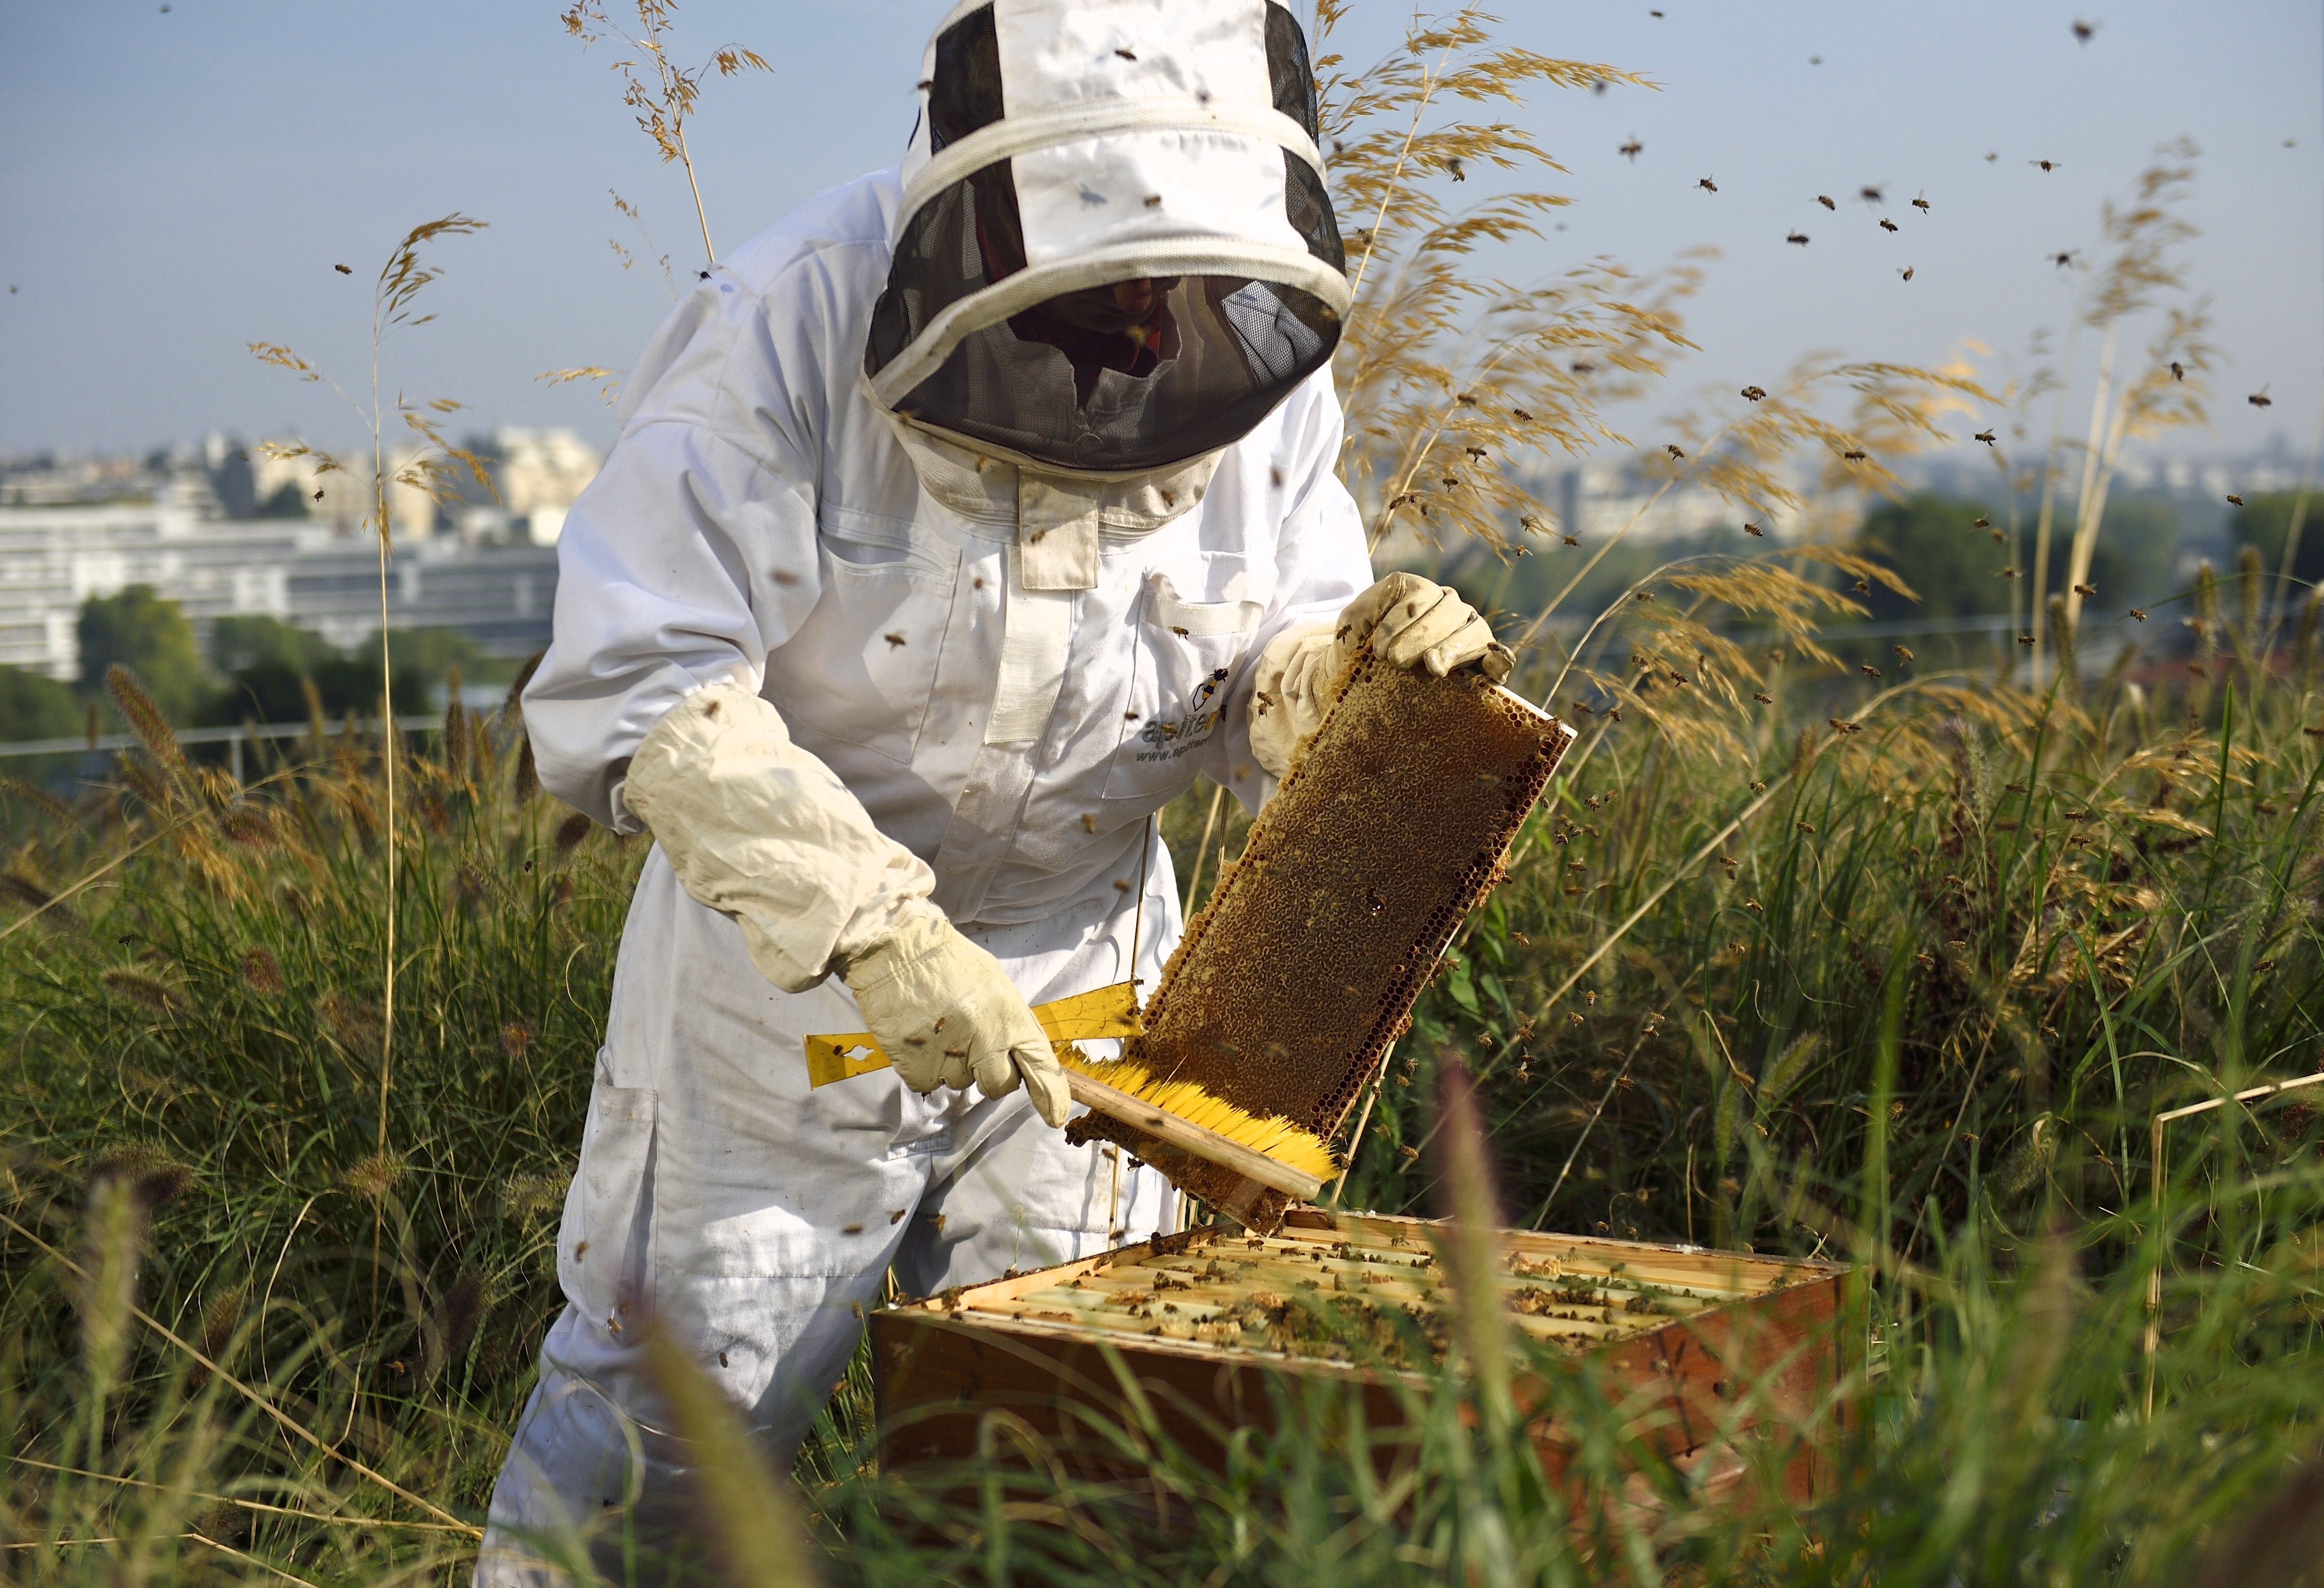 Bayerische Regierung übernimmt erfolgreiches Bienen-Volksbegehren